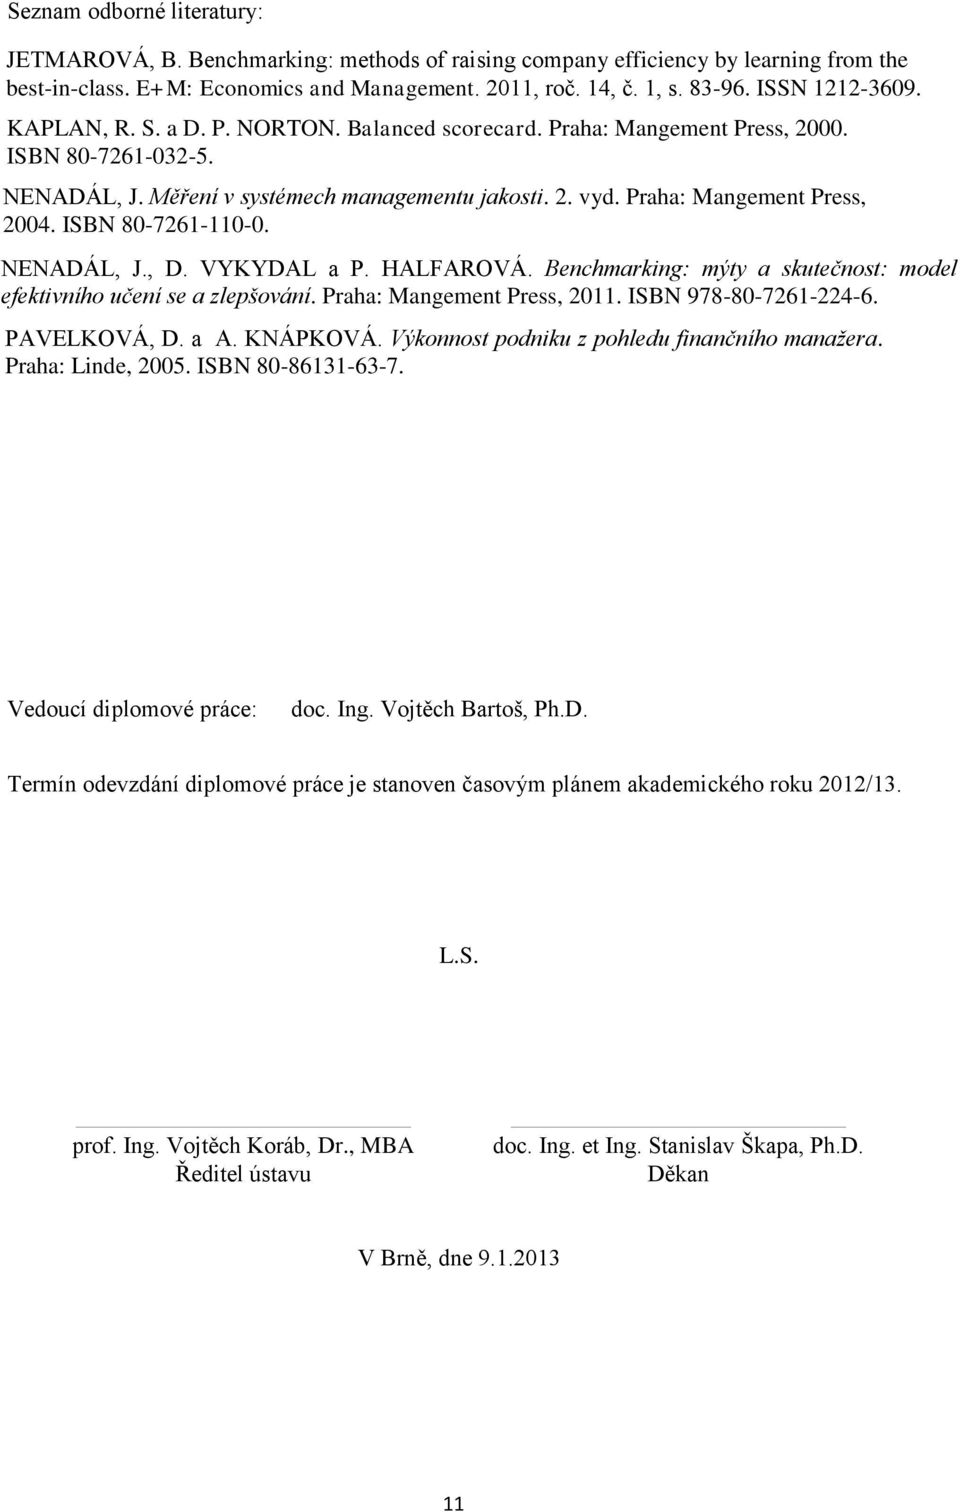 Praha: Mangement Press, 2004. ISBN 80-7261-110-0. NENADÁL, J., D. VYKYDAL a P. HALFAROVÁ. Benchmarking: mýty a skutečnost: model efektivního učení se a zlepšování. Praha: Mangement Press, 2011.